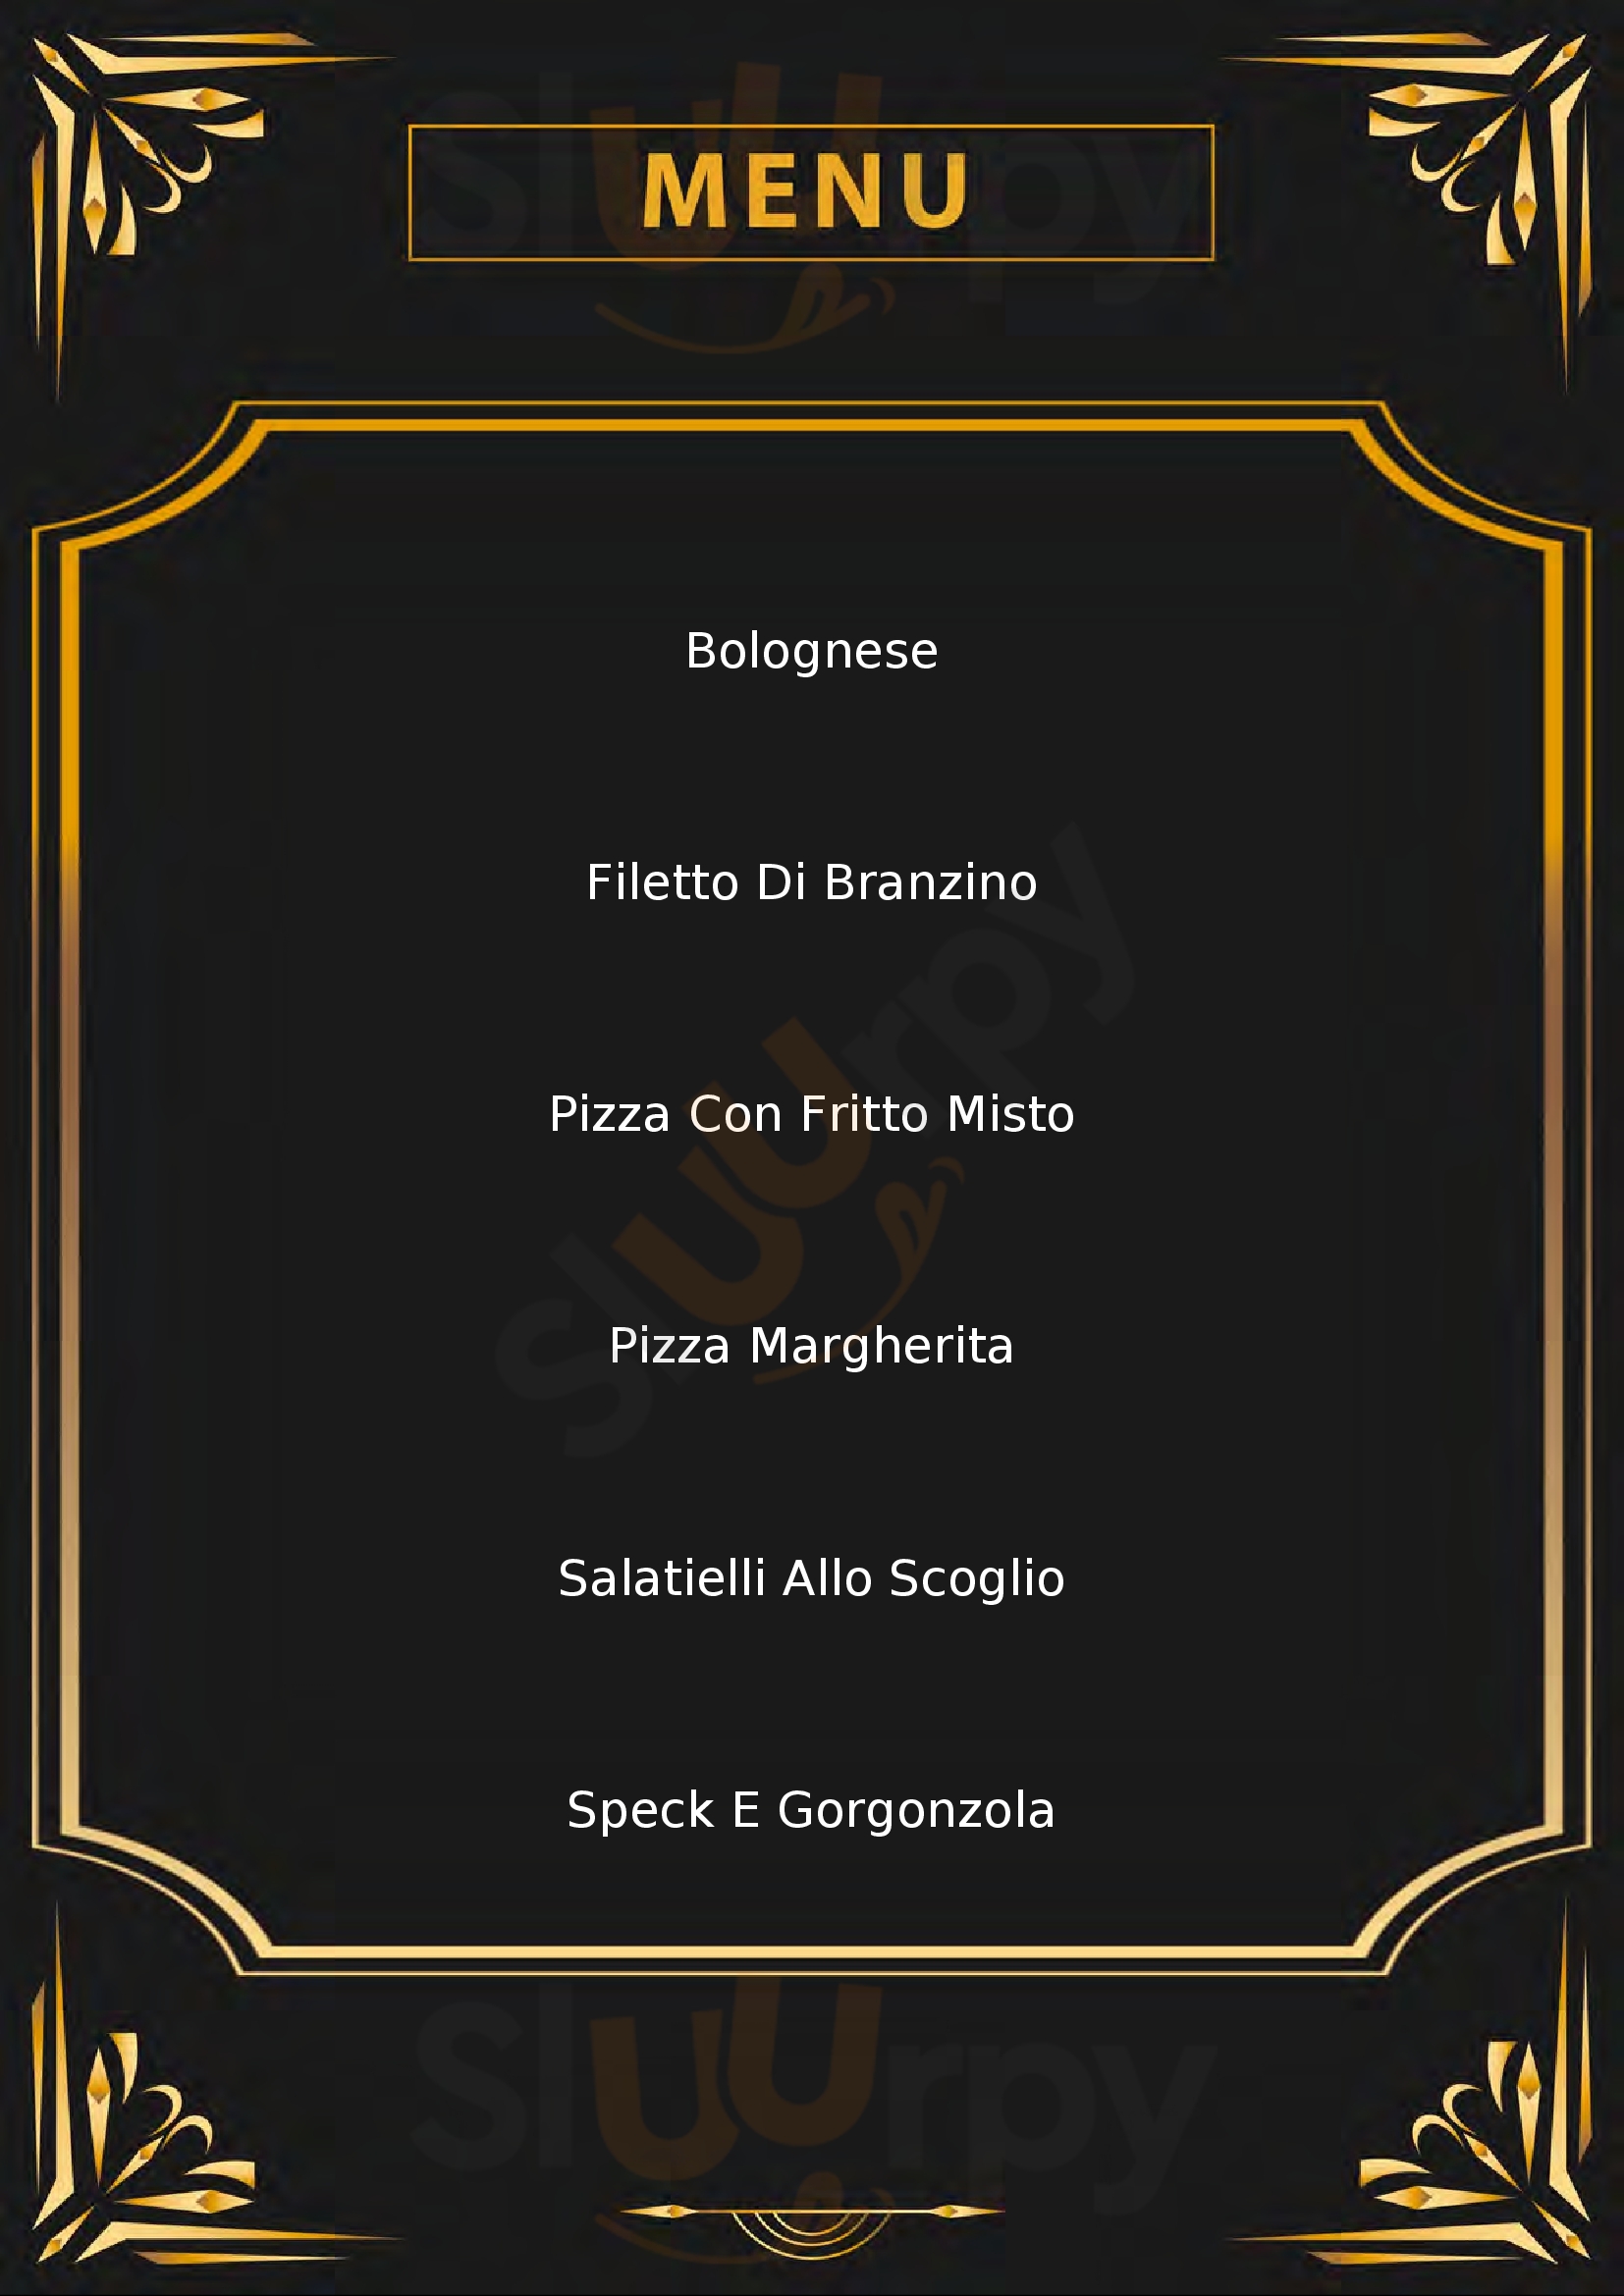 Pizzeria da Gianni Gavassa menù 1 pagina